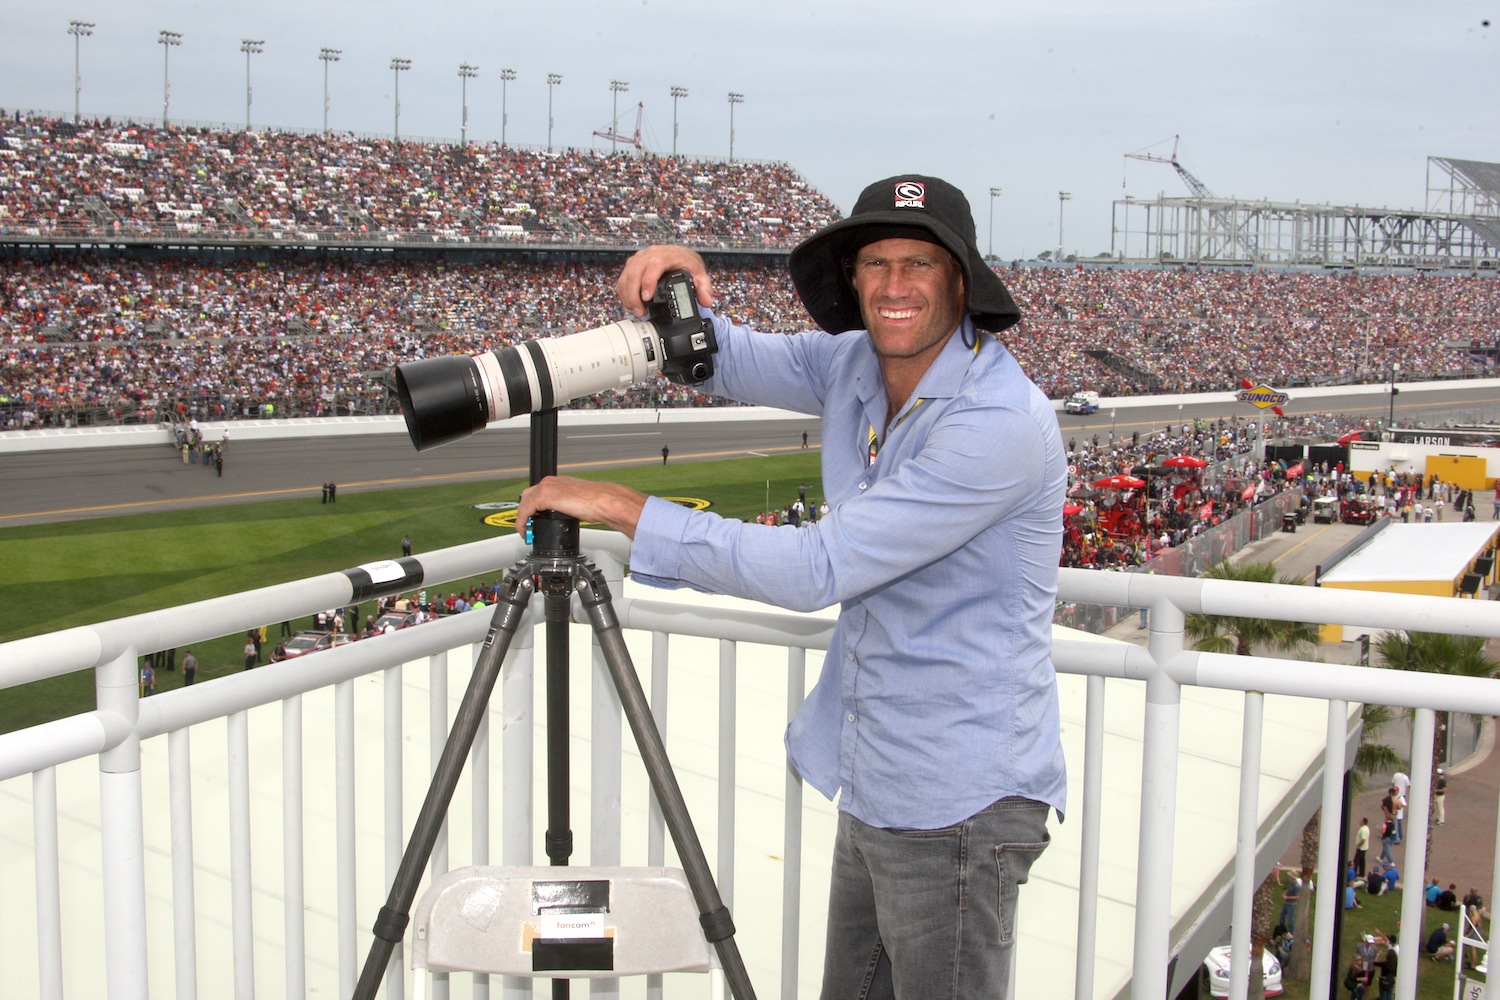 Daytona 500 Fancam: a technical feat